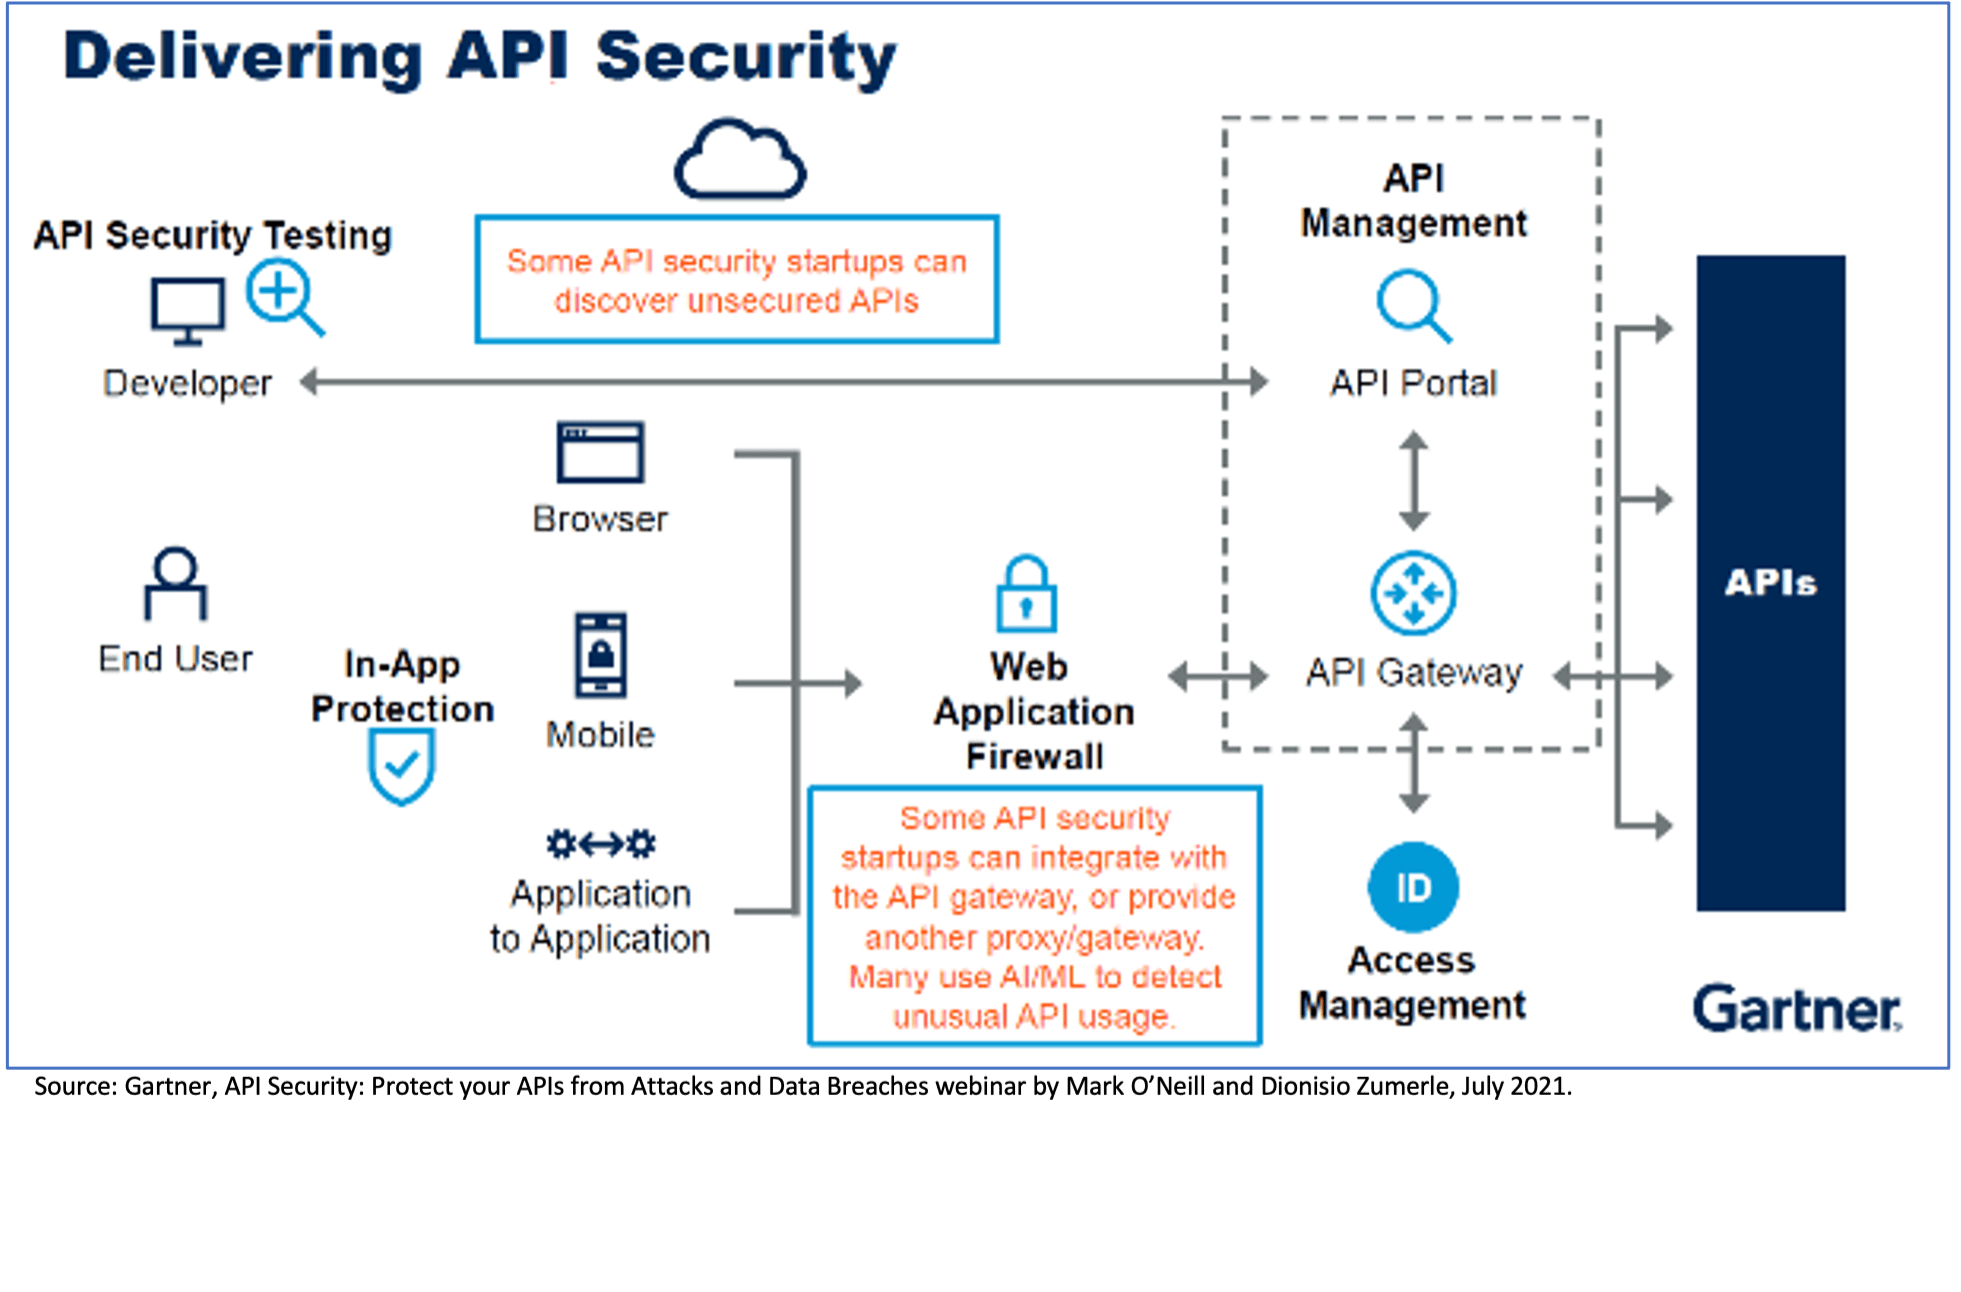 API Security Gartner Recognition